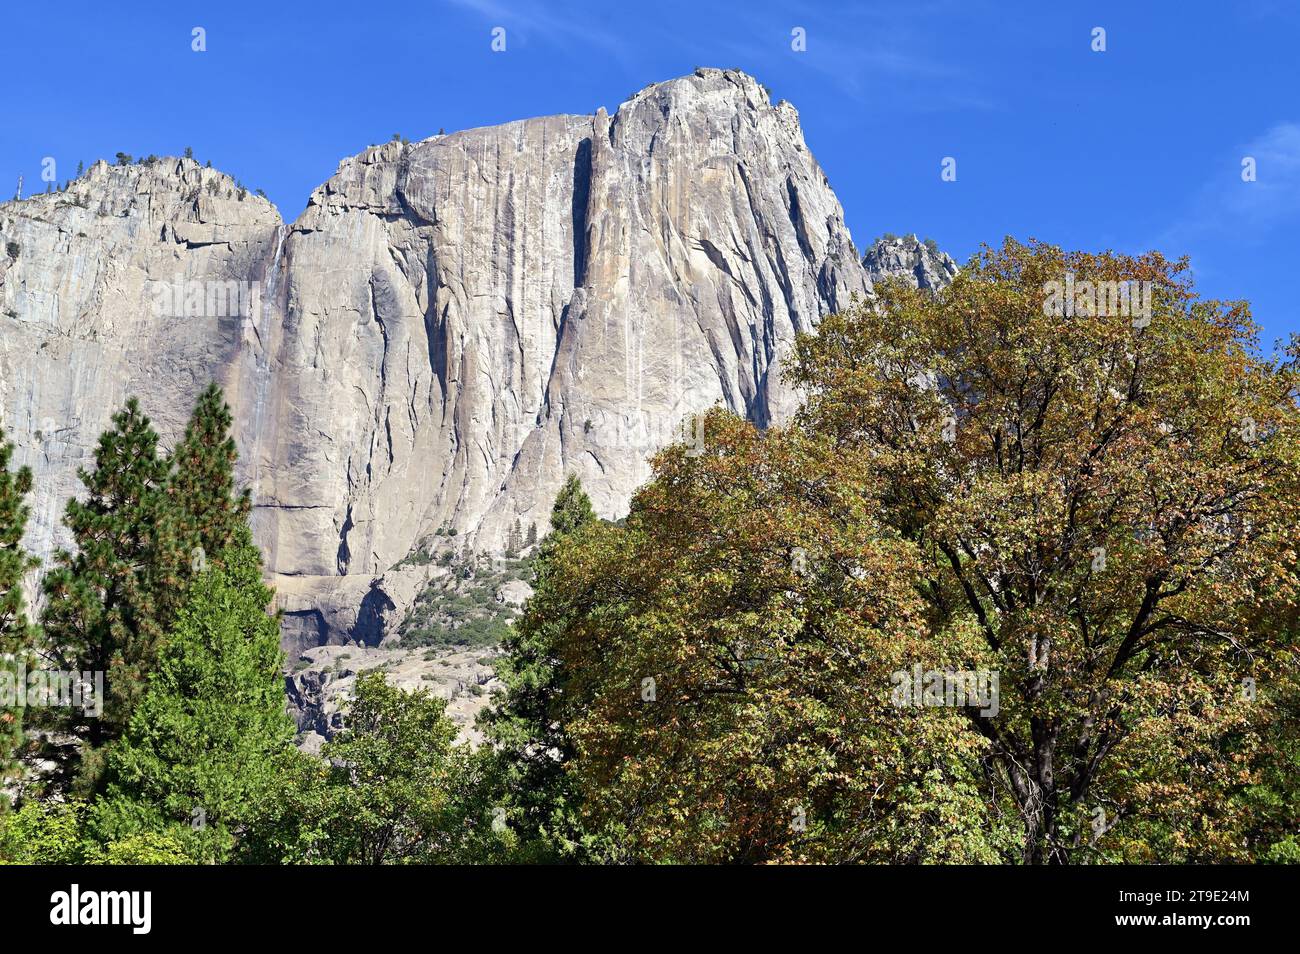 Parc national de Yosemite, Californie, États-Unis. Une vue sur le célèbre El Capitan sauvage, depuis le sol de Yosemite Valley. Banque D'Images